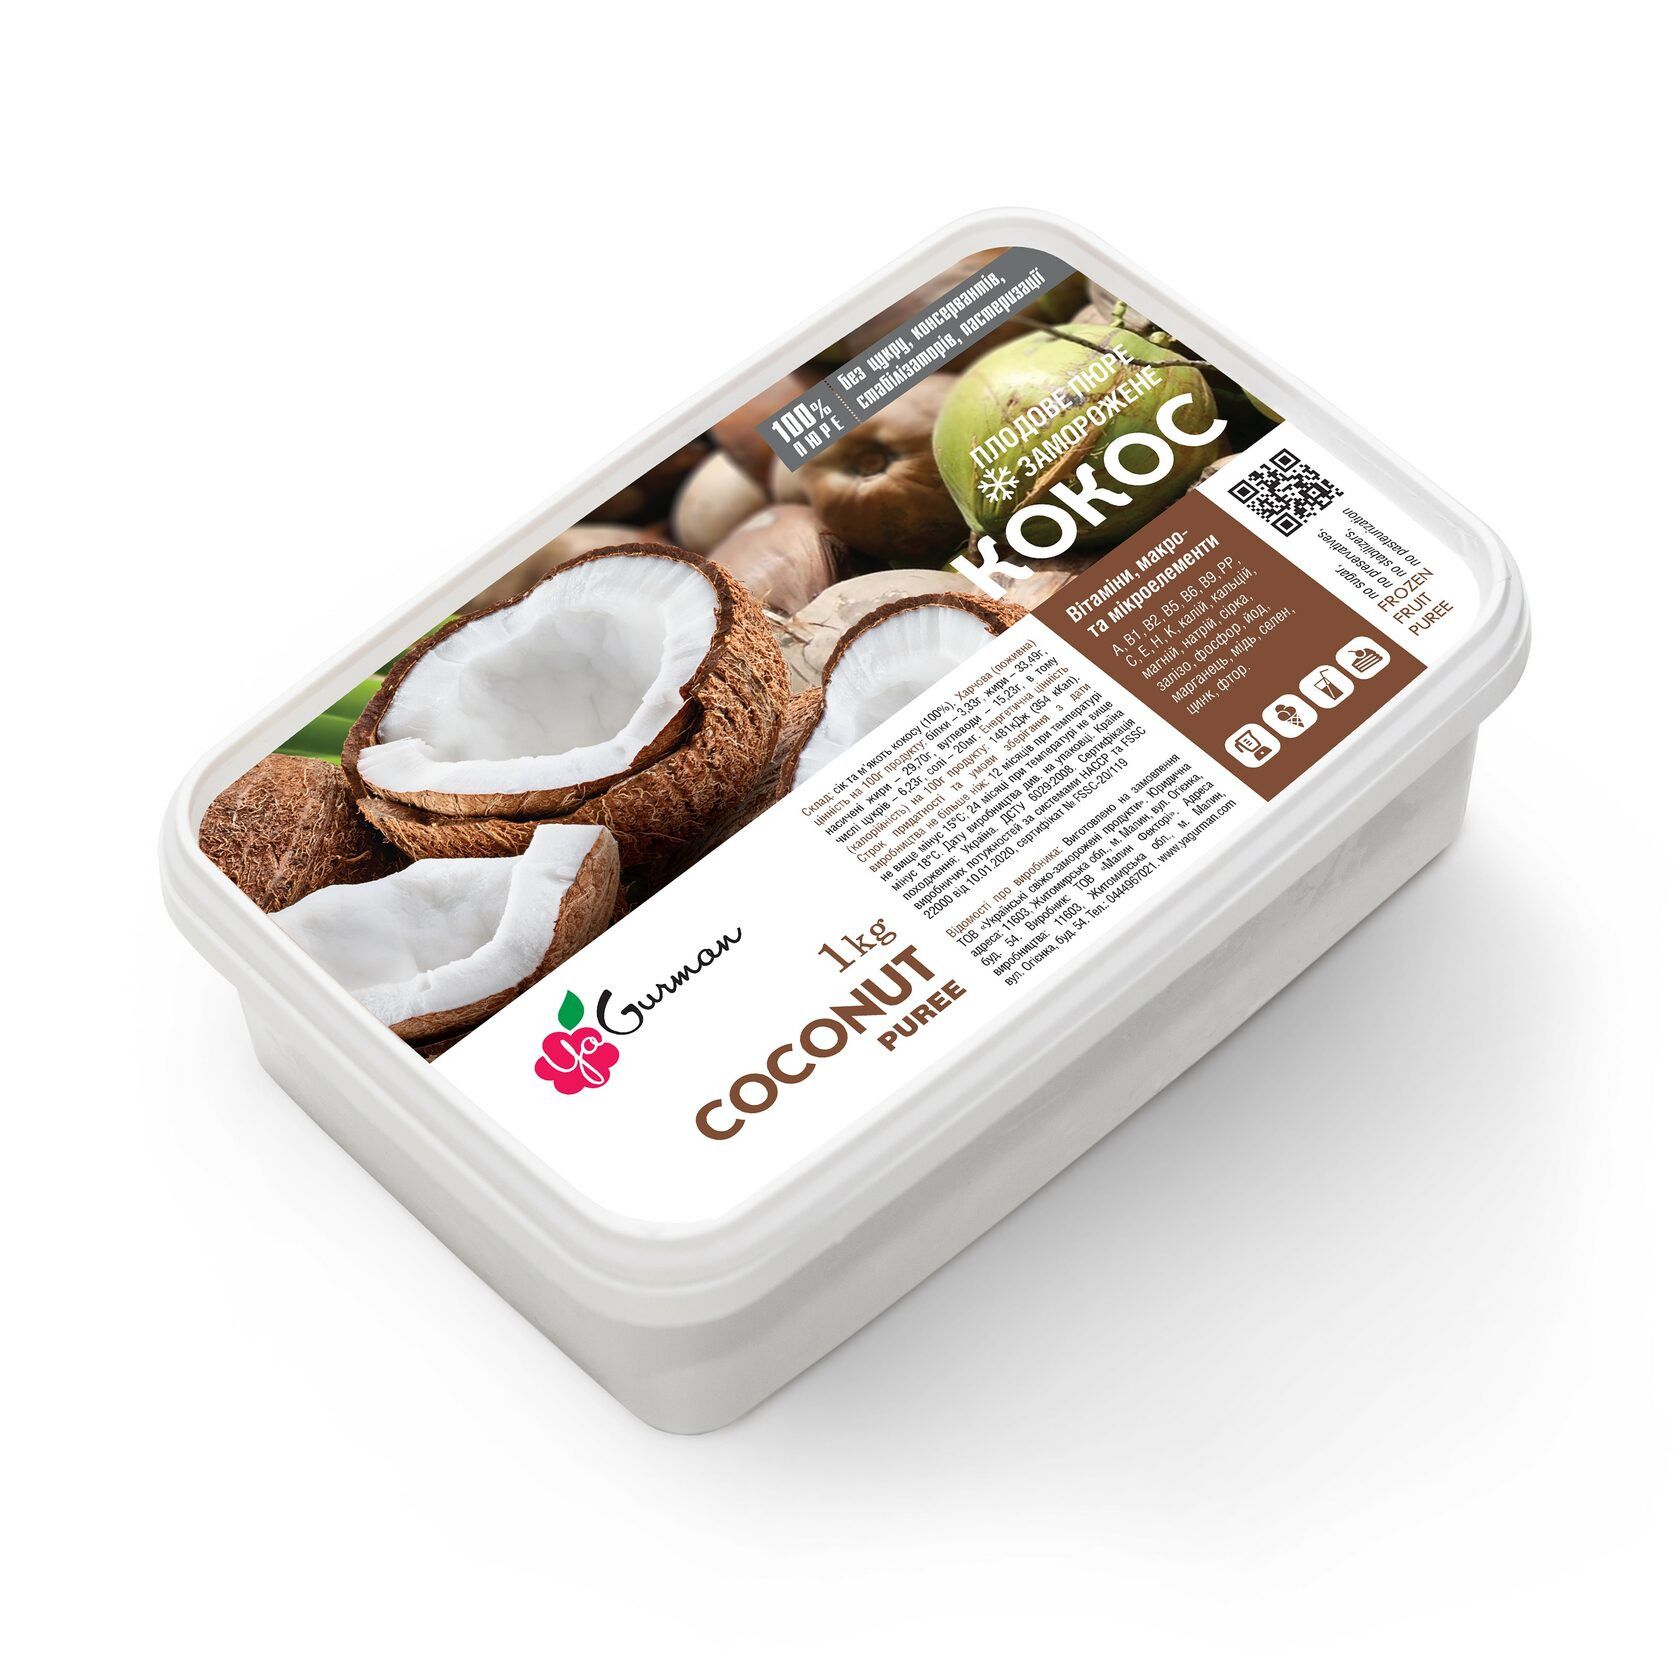 ⋗ Замороженное пюре кокоса без сахара YaGurman, 1кг купить в Украине ➛ CakeShop.com.ua, фото